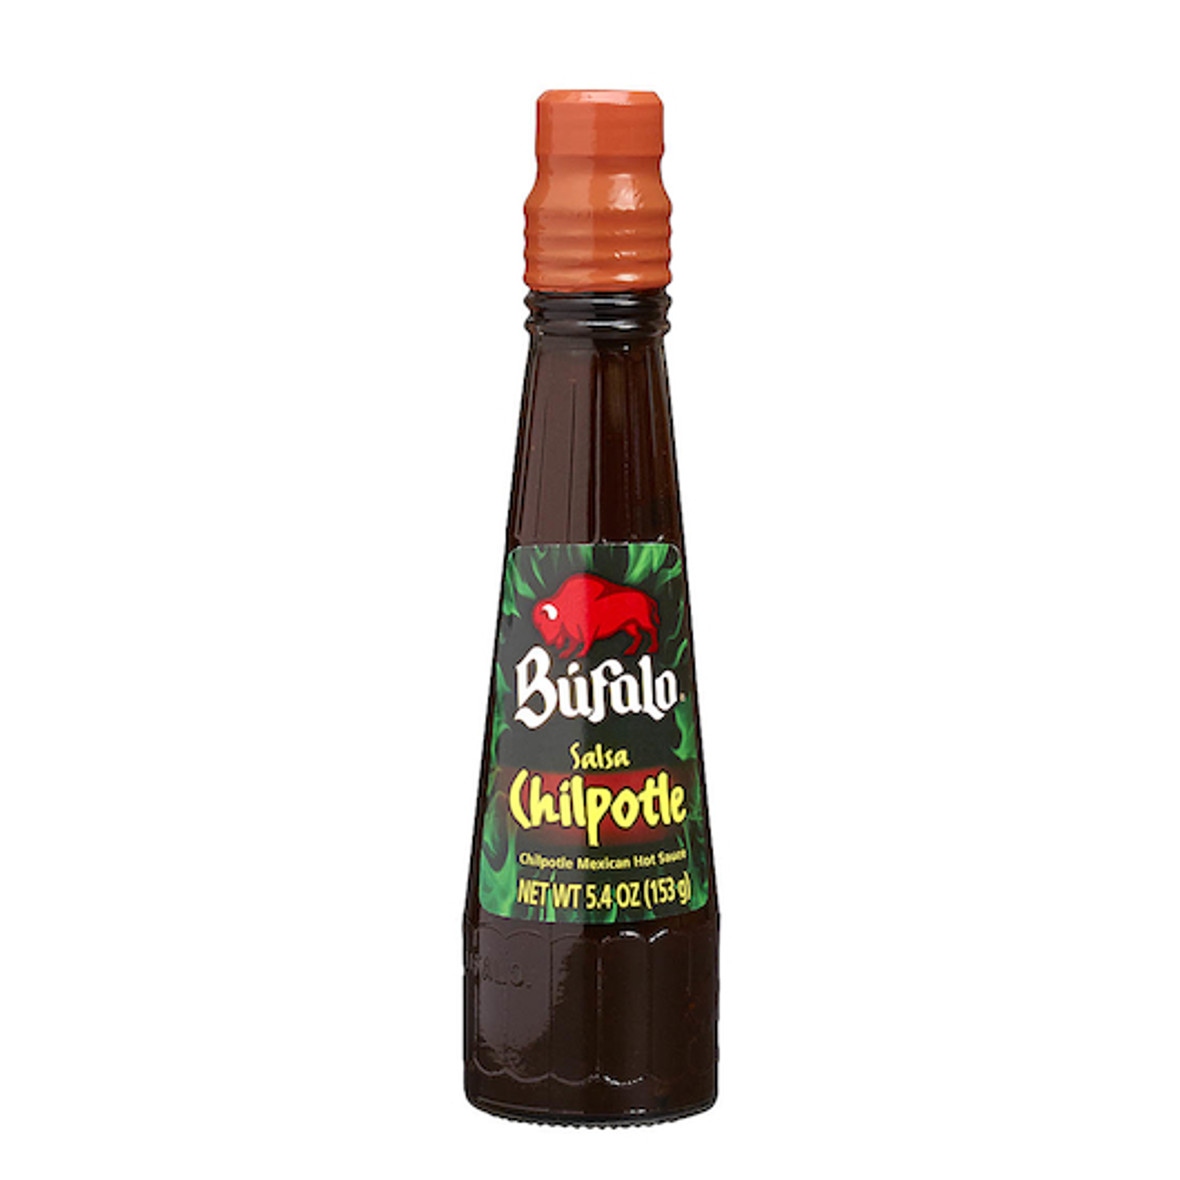 Bufalo Chipotle Hot Sauce, 5.4 Ounce, 24 Per Case